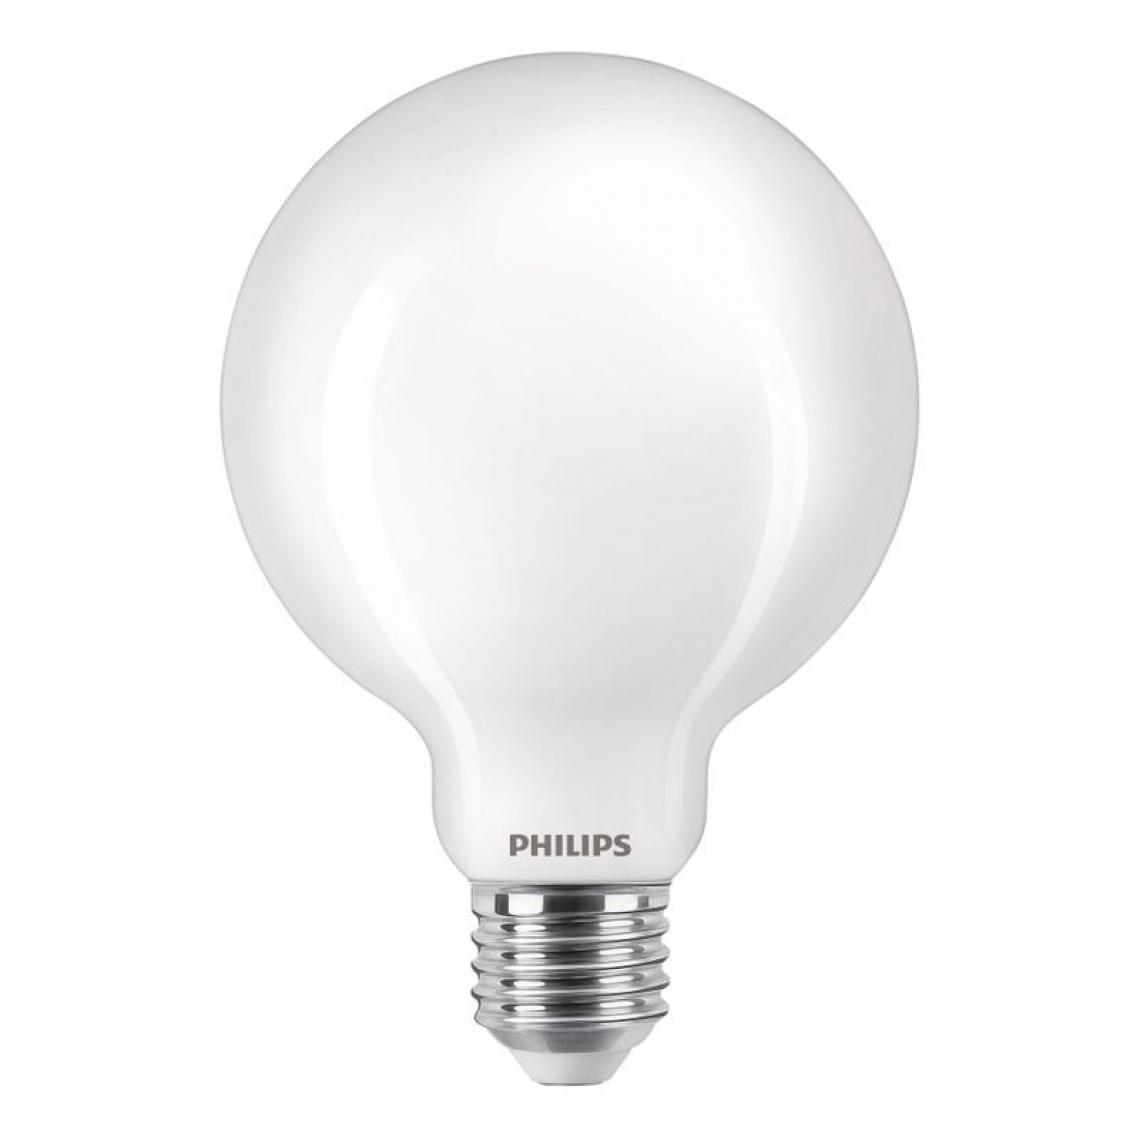 Philips - Ampoule LED dépolie E27 PHILIPS forme globe EQ60W. - Ampoules LED